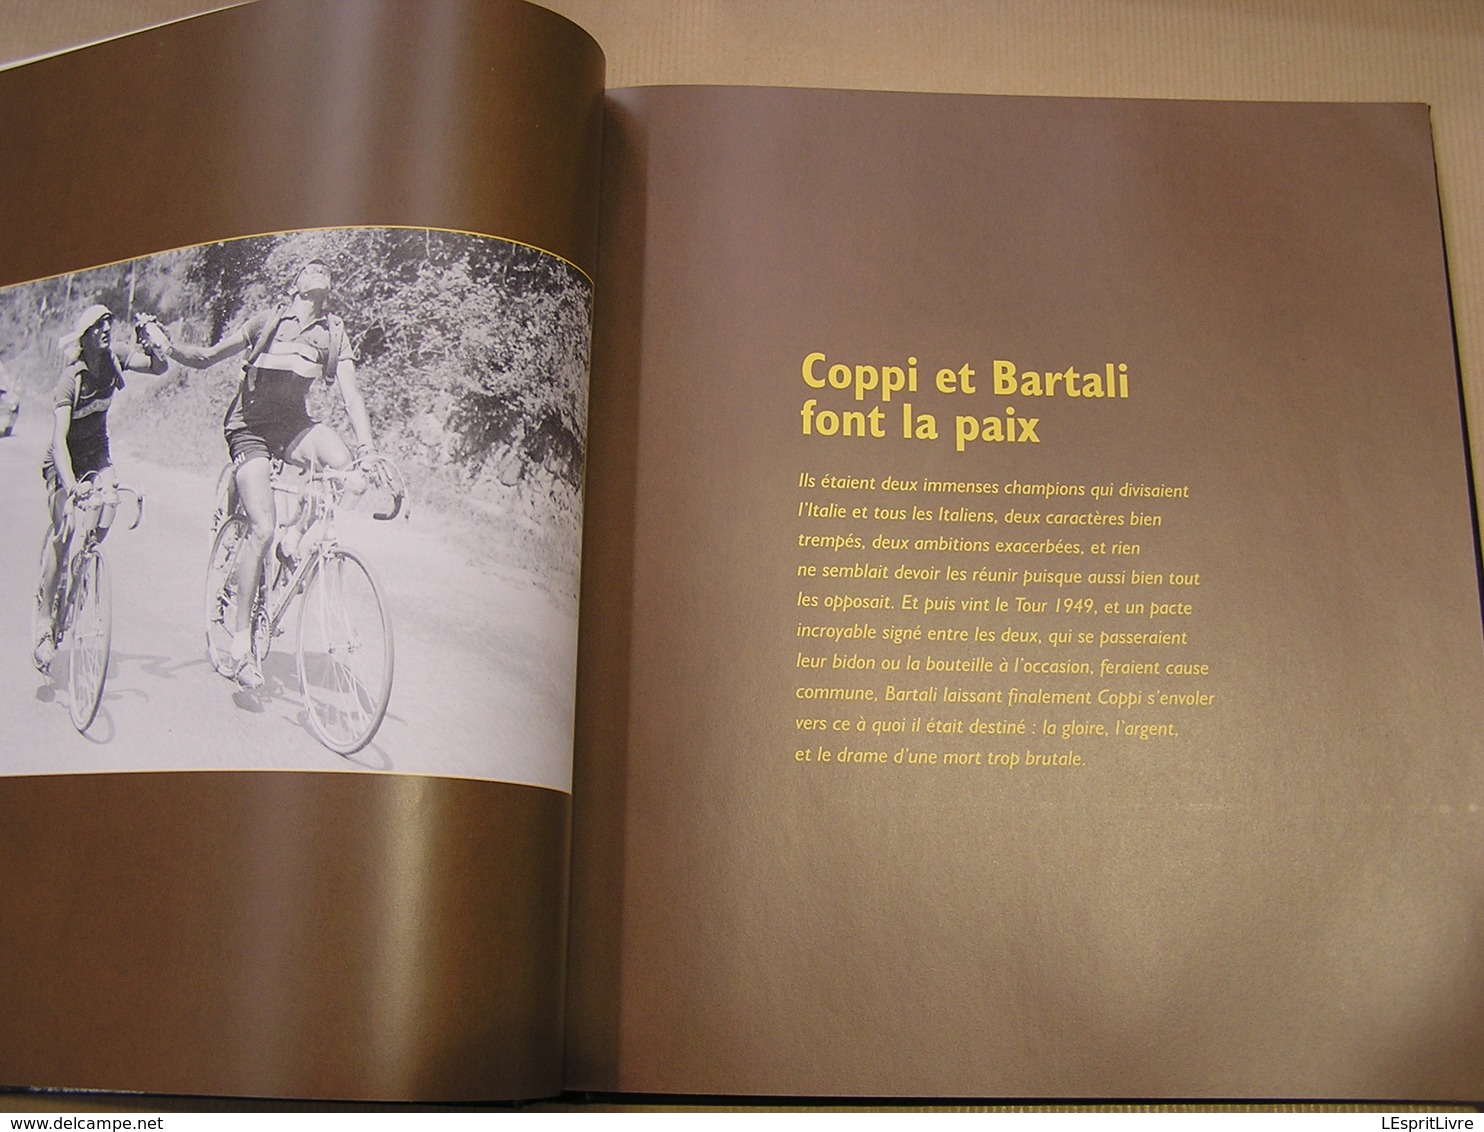 CYCLISME Les Moments Inoubliables Course Cycliste Coureur Vélo Coppi Merckx Bobet Robic Kubler Bartali Anquetil Champion